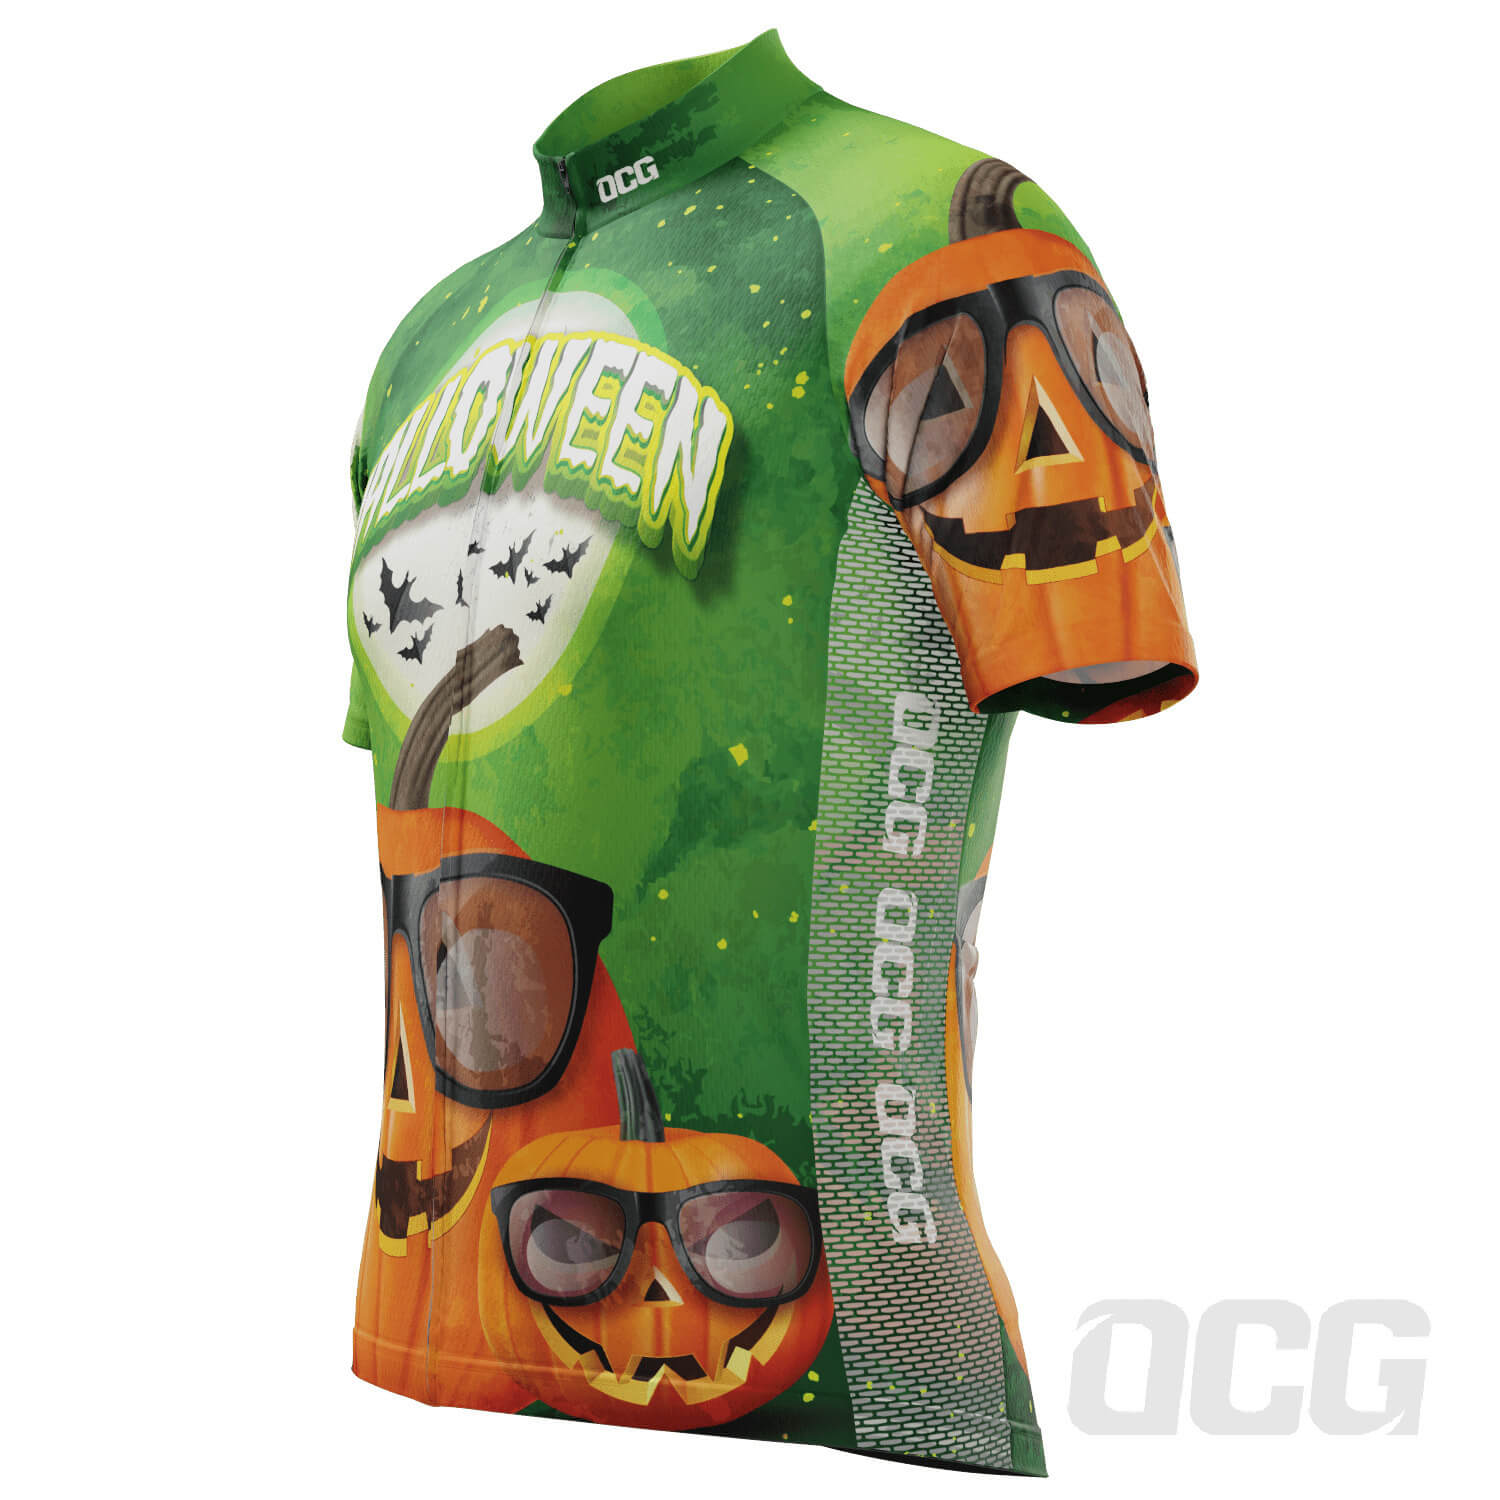 Men's Halloween Pumpkin Glasses Short Sleeve Cycling Jersey